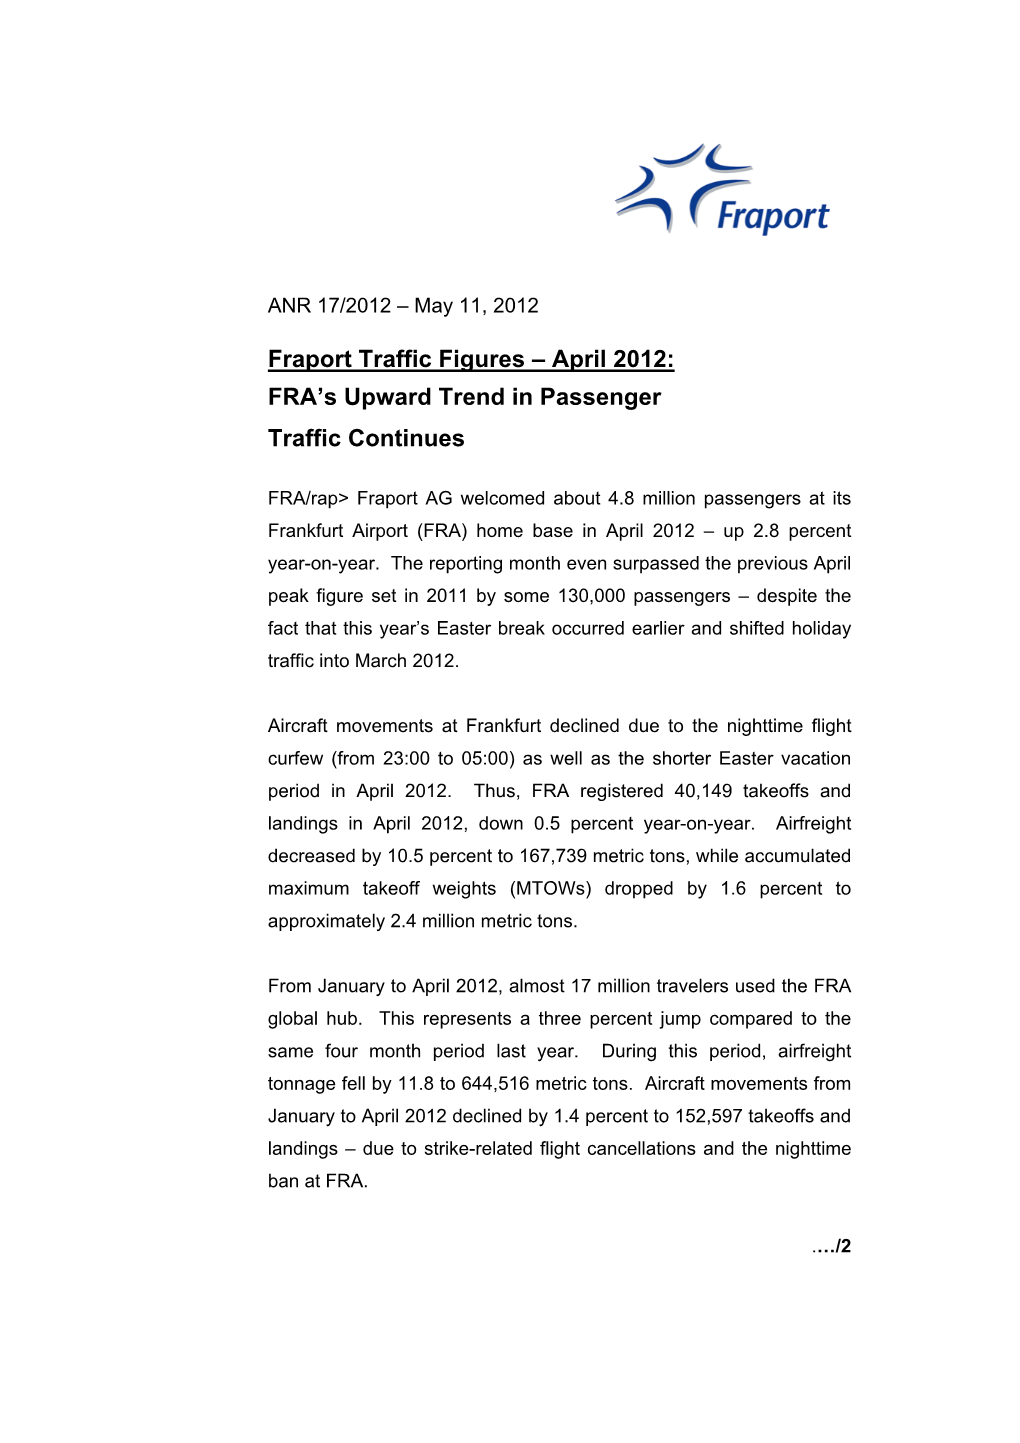 Fraport Traffic Figures – April 2012: FRA's Upward